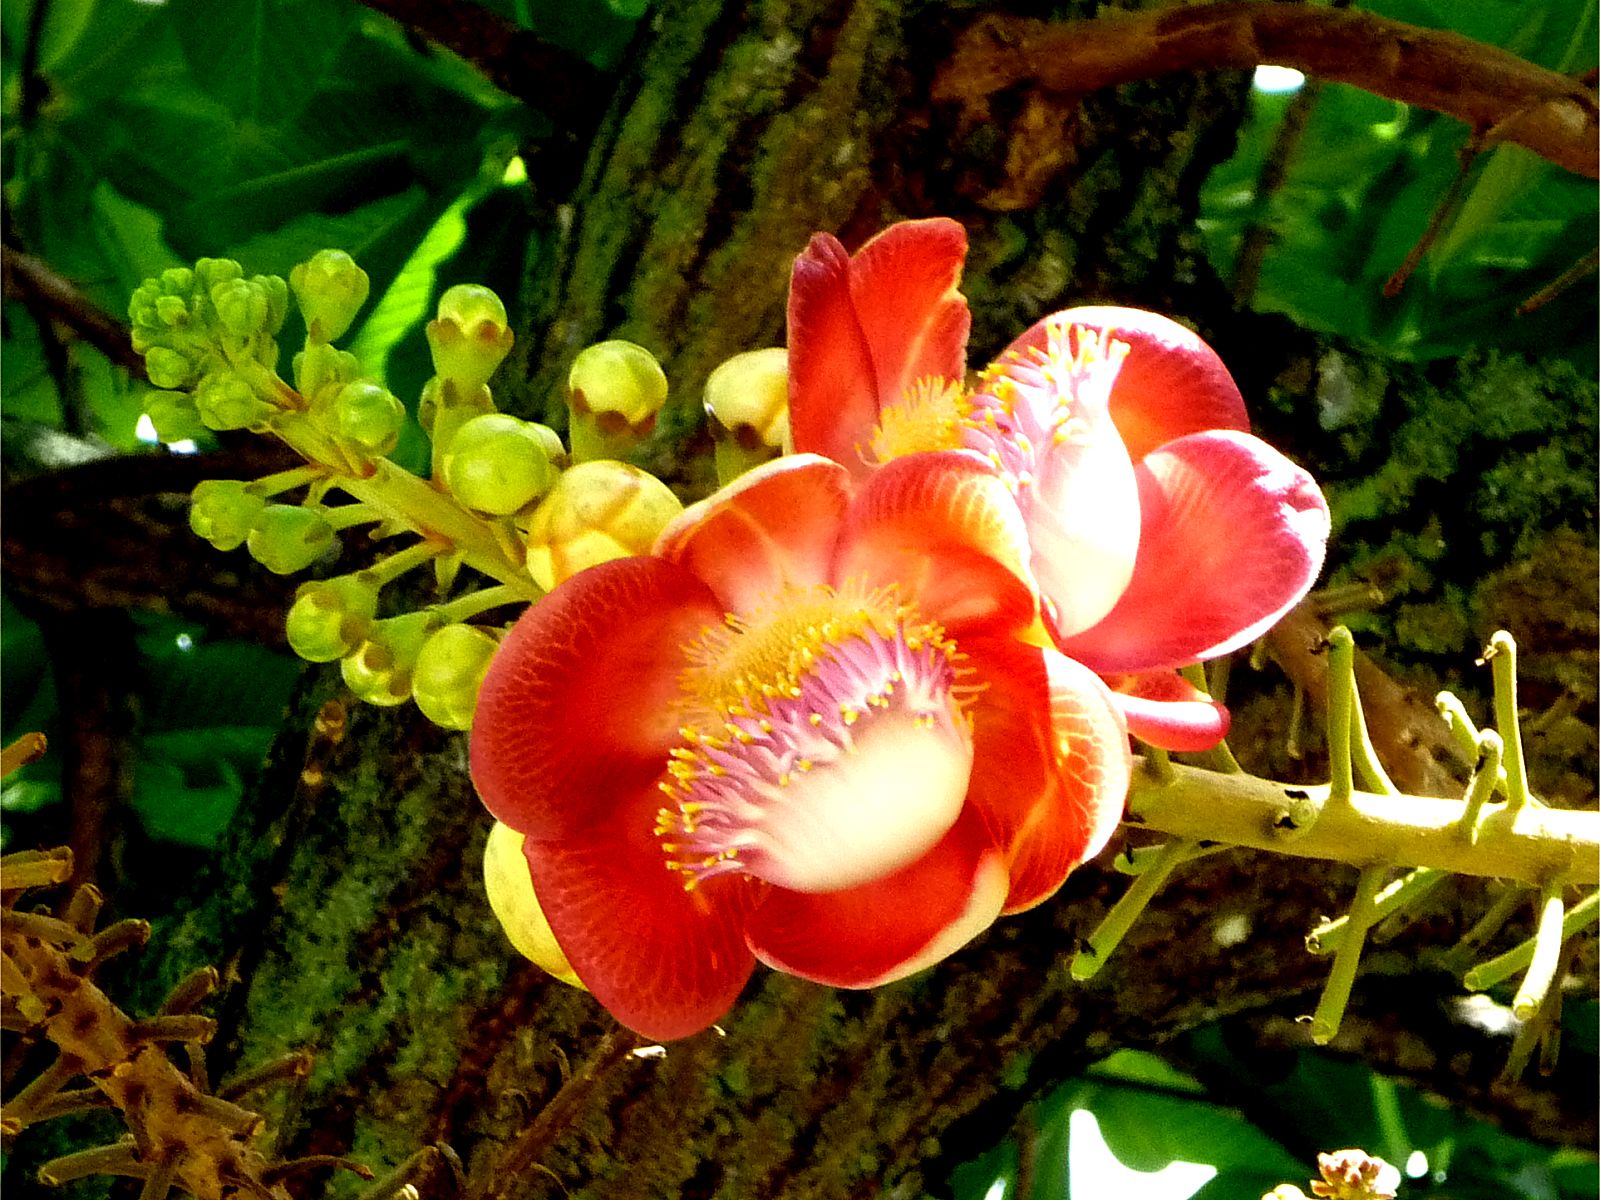 Tổng hợp những hình ảnh đẹp nhất về hoa sala – Hoa quý linh thiêng nơi cửa Phật - [Kích thước hình ảnh: 1600x1200 px]